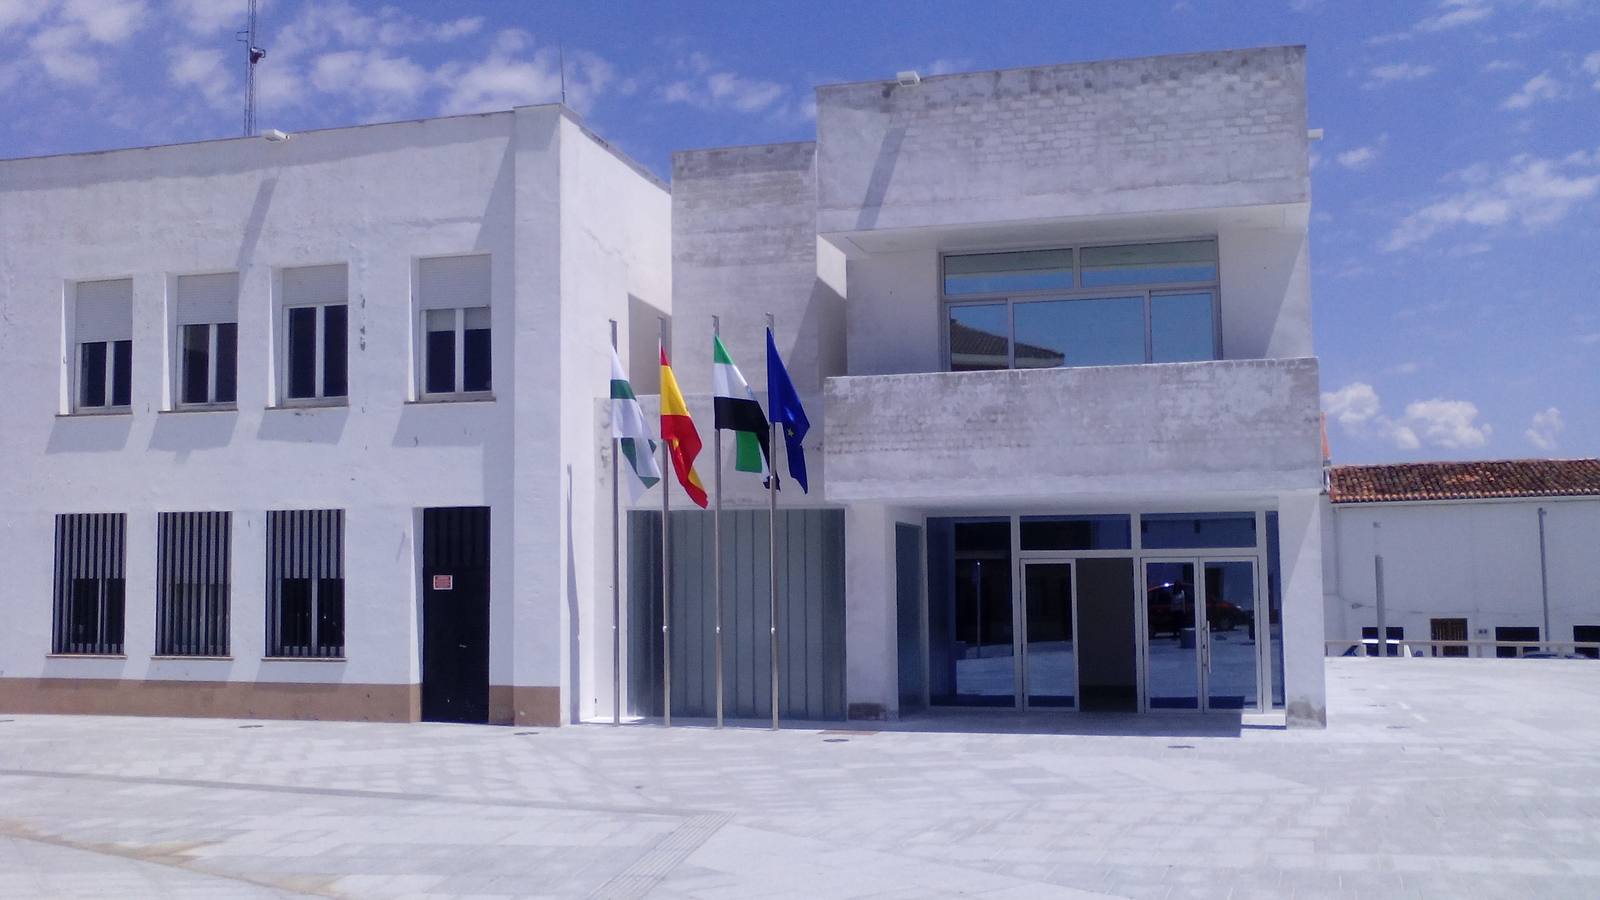 Abierto periodo de licitación para la Caseta Municipal de San Antonio Abad y Carnavales en Peloche